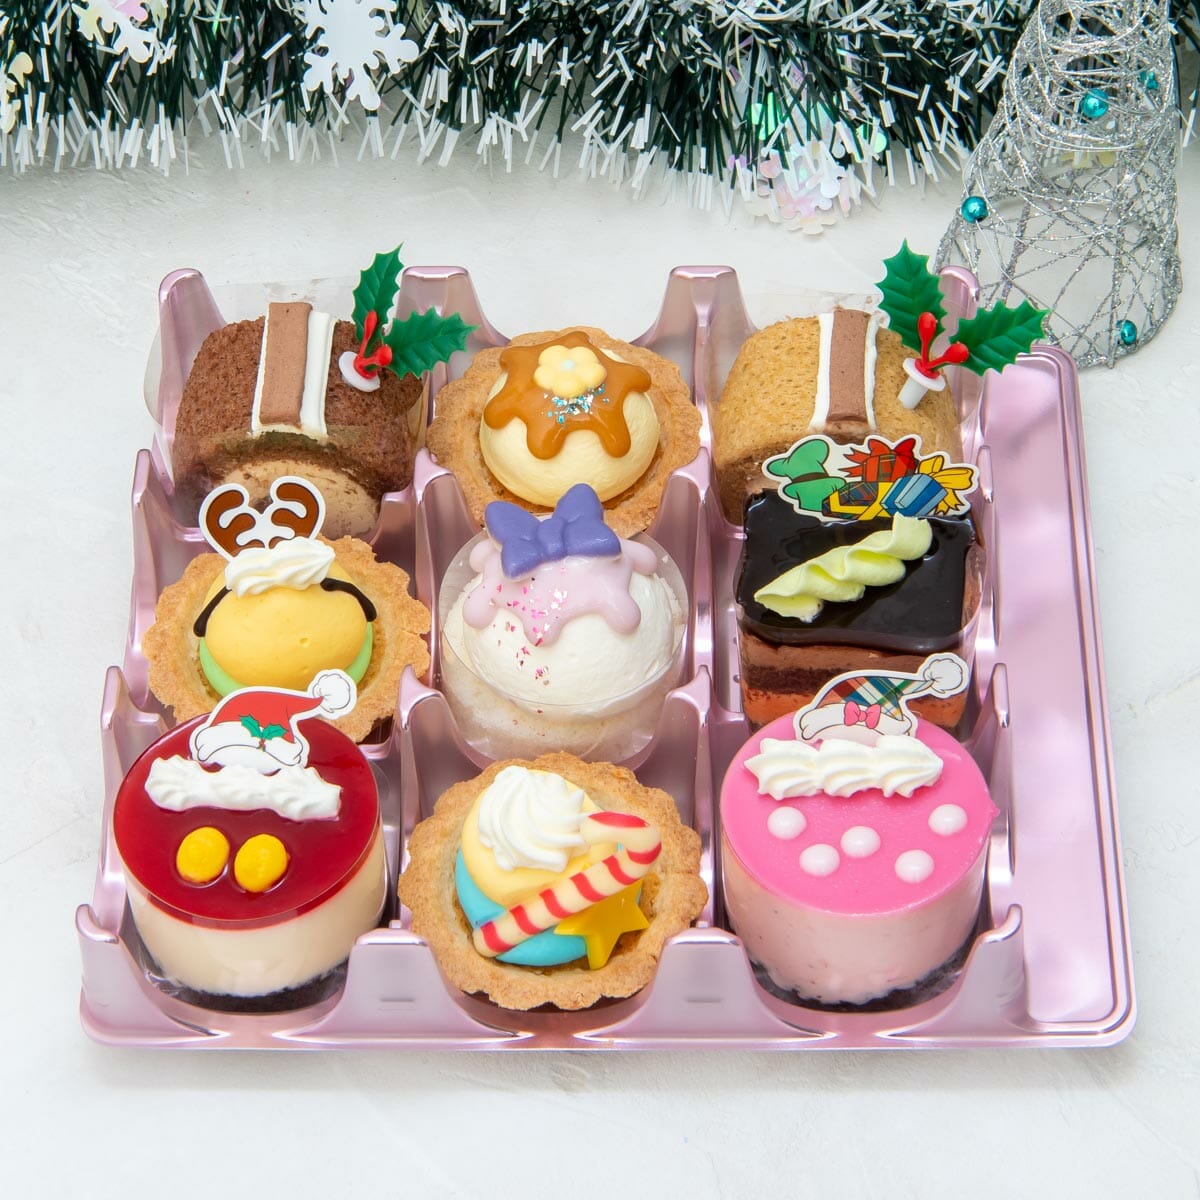 ミッキー フレンズのプチケーキ 銀座コージーコーナー ディズニー クリスマス コレクション